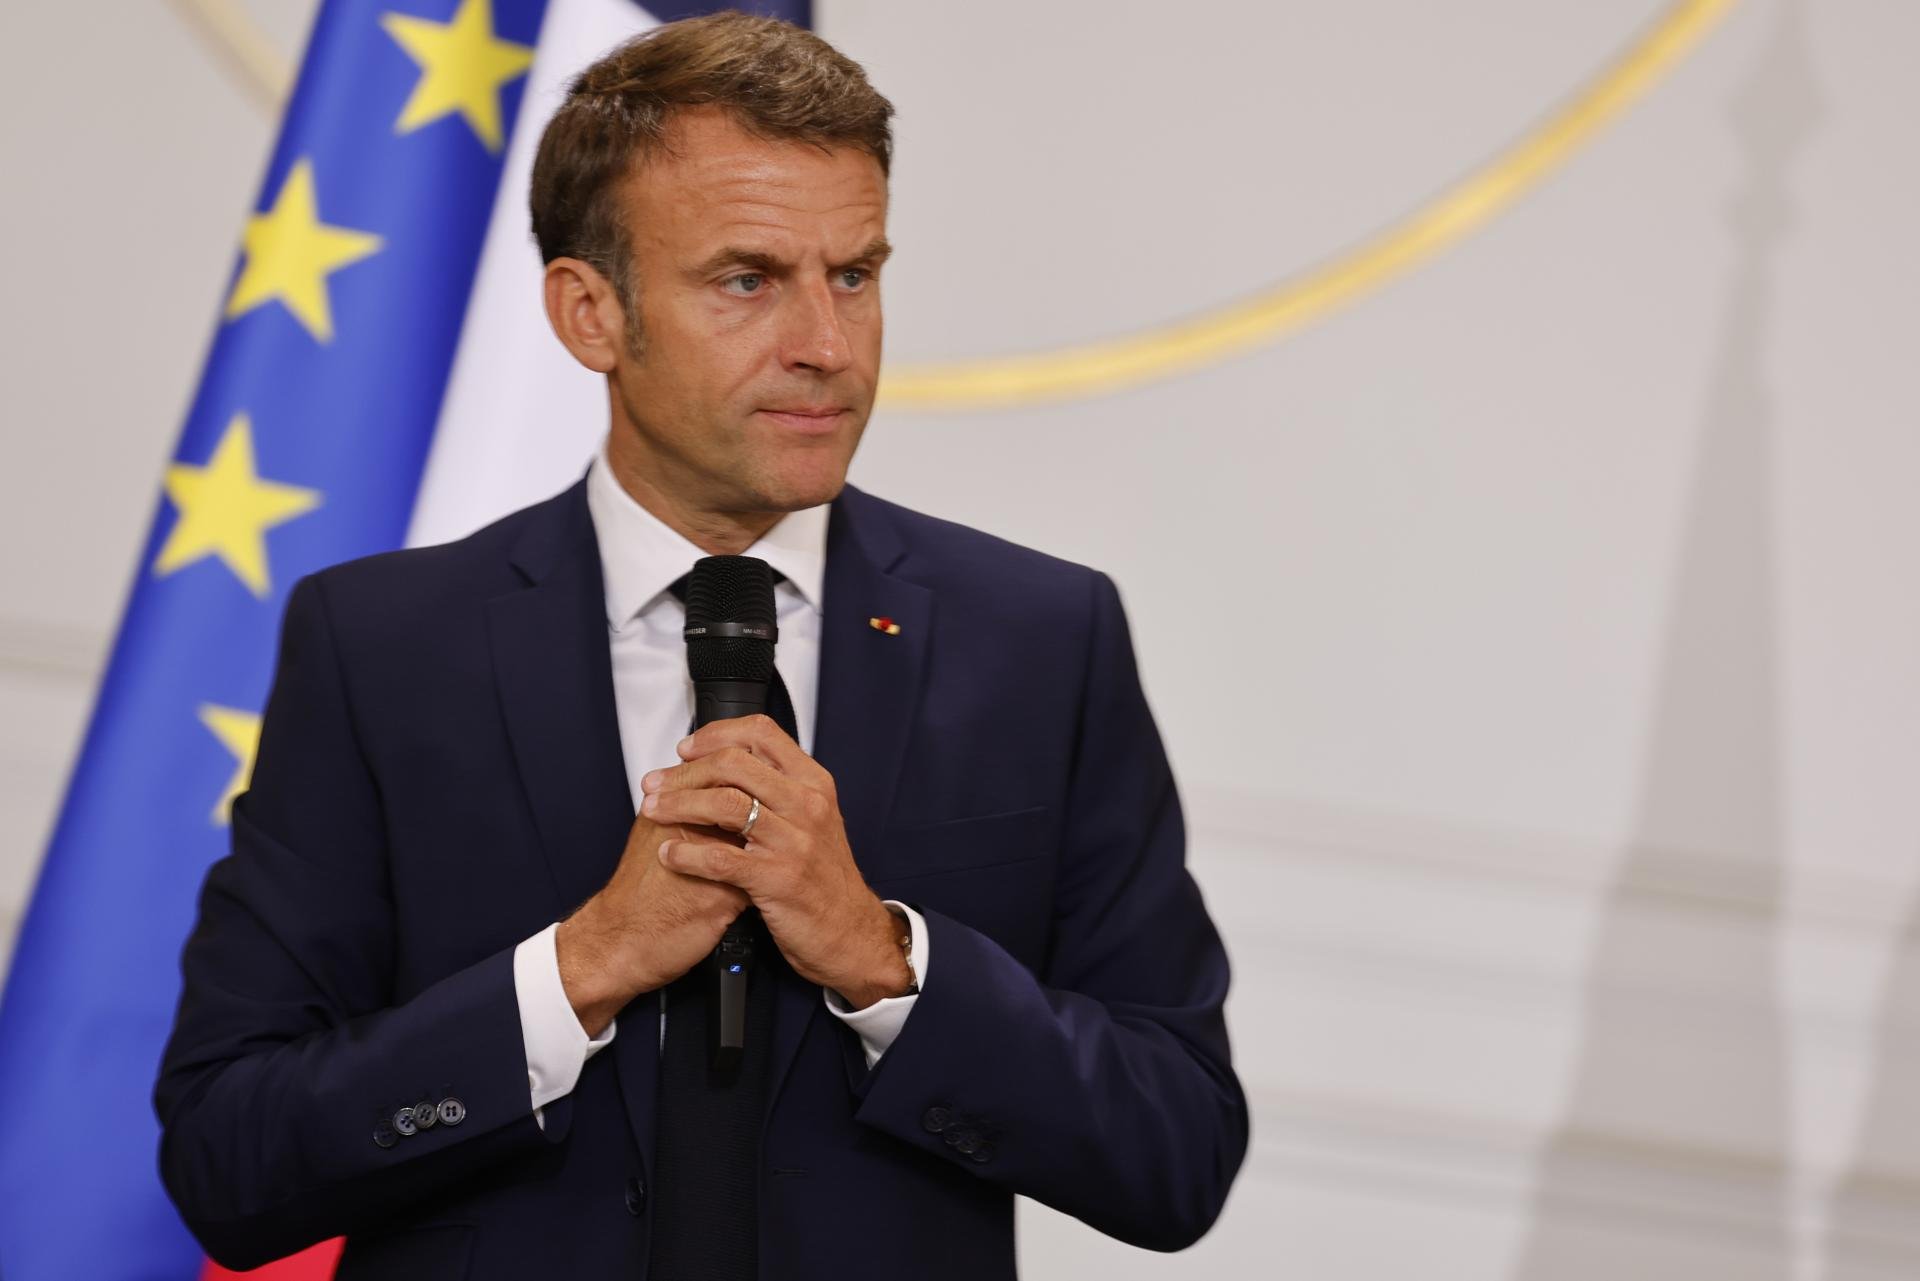 Emmanuel Macron impulsa una "ley de emergencia" para reconstruir Francia tras los disturbios